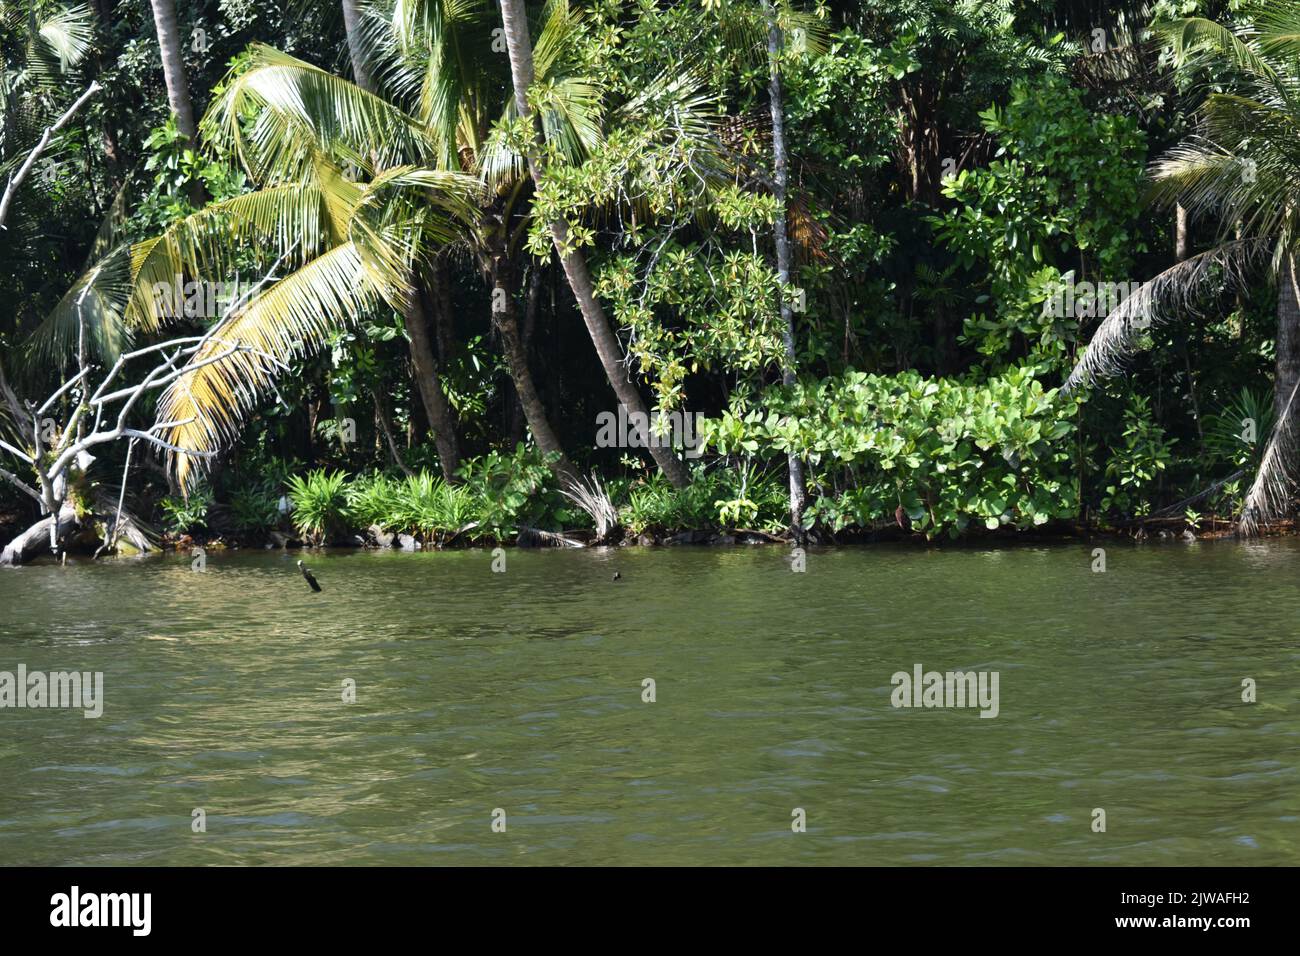 Le safari de la rivière Madu est une activité populaire qui doit être sur la liste de faire de tout respectable goer sri lankais de vacances. Cette activité inoubliable dure plus de deux heures et donne à un visiteur l'occasion de parcourir les passages secrets à travers les forêts de mangrove et de voir l'écologie. Madu Ganga est un cours d'eau mineur qui provient près d'Uragasmanhandiya dans le district de Galle au Sri Lanka, avant de s'élargir dans le lac de Madu Ganga à Balapitiya. La rivière coule ensuite sur 4,4 km avant de s'écouler dans l'océan Indien. Il est situé à 88 km au sud de Colombo et à 35 km au nord de Galle. Sri L Banque D'Images